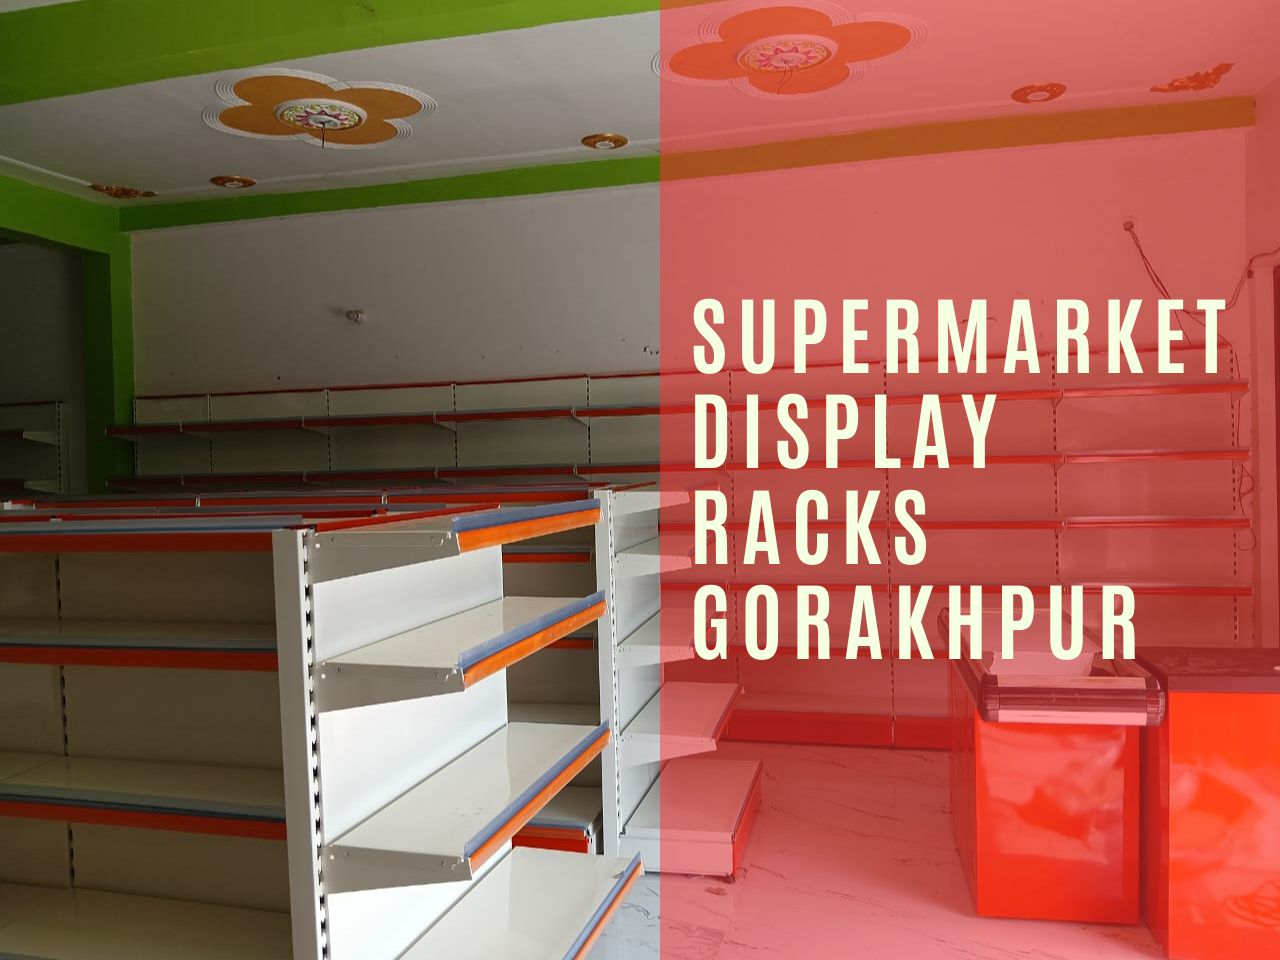 Supermarket display racks Gorakhpur.jpg